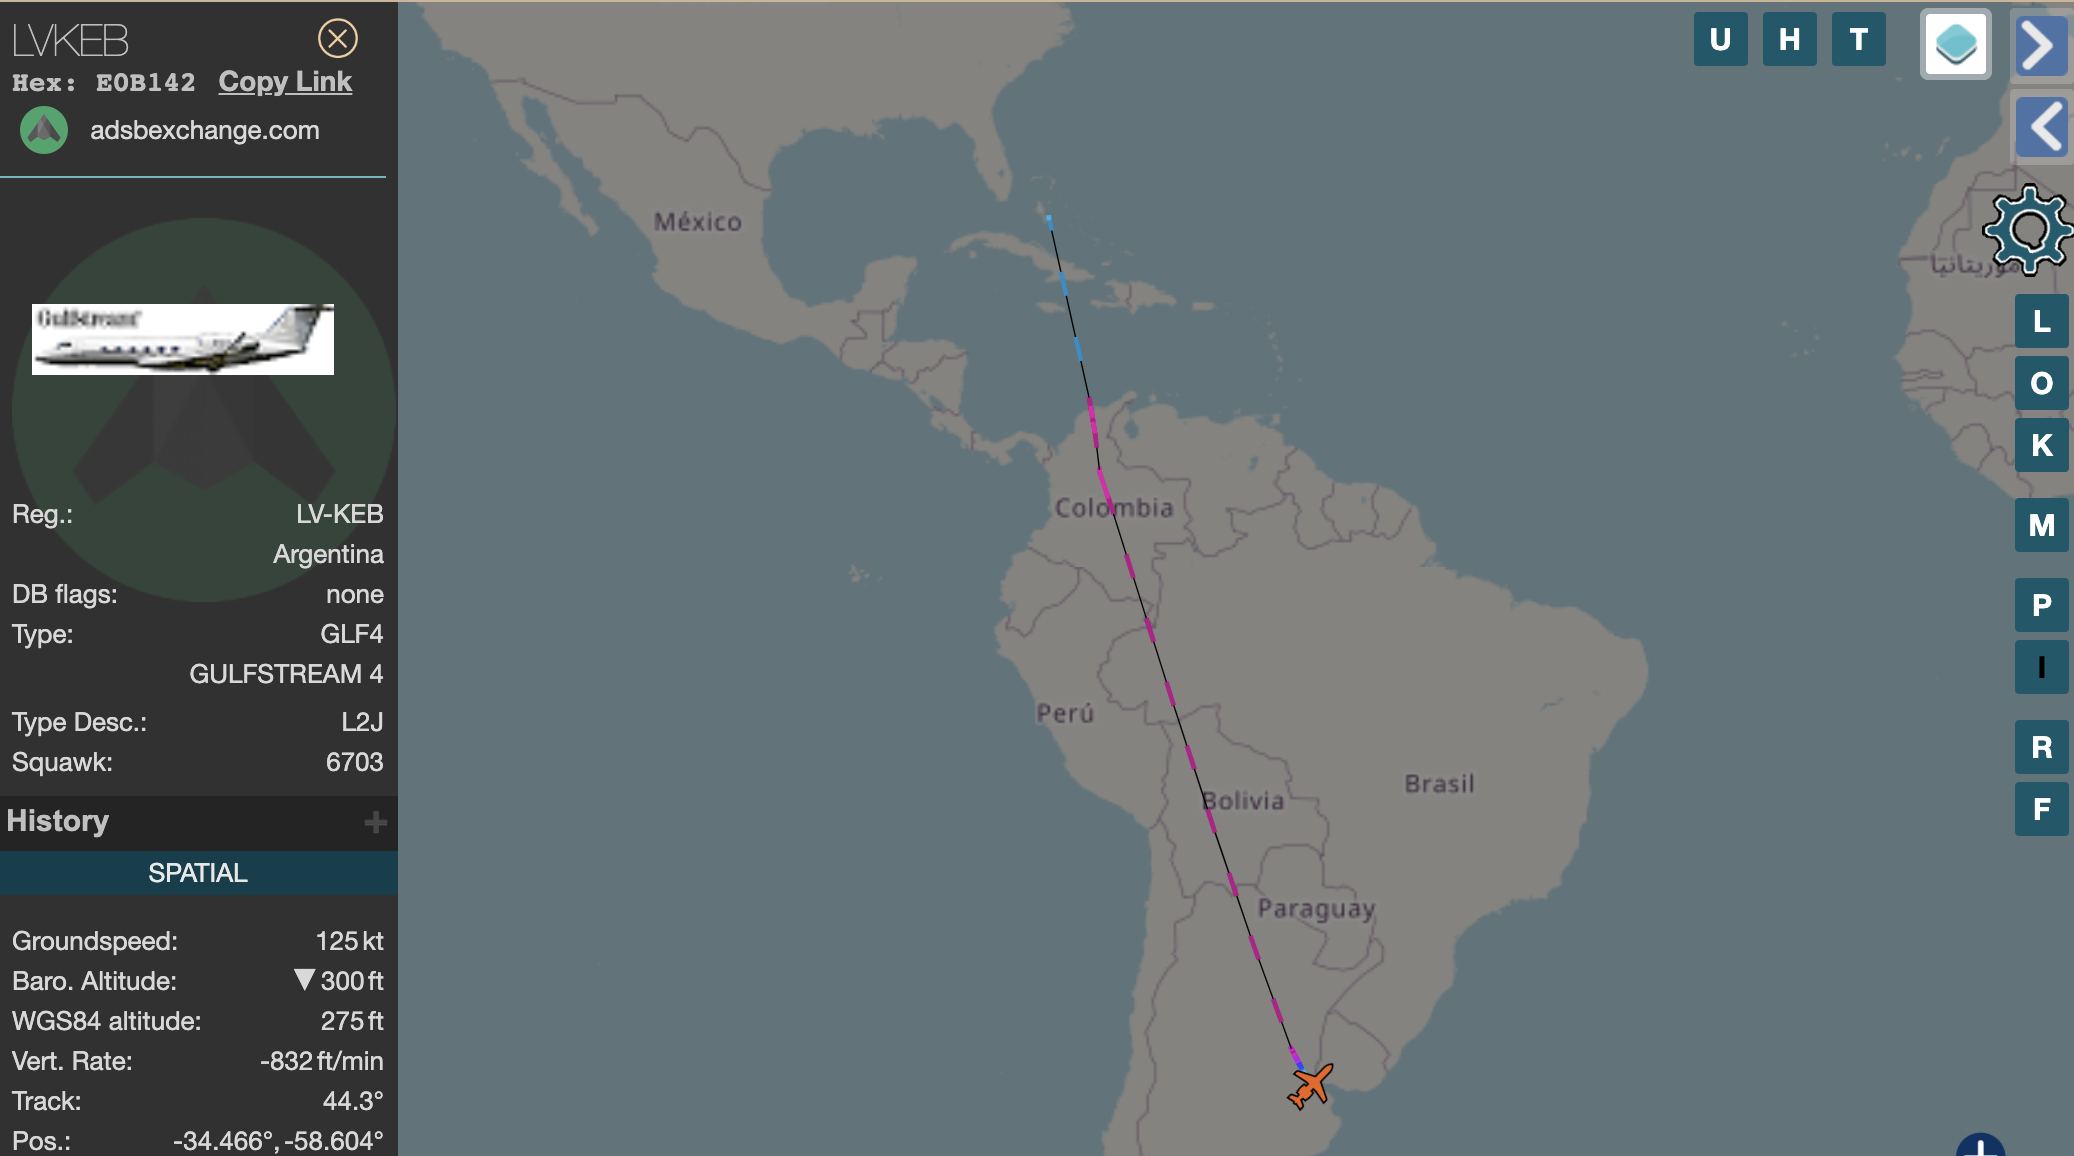 SBF in Argentina - Suspicious flight path